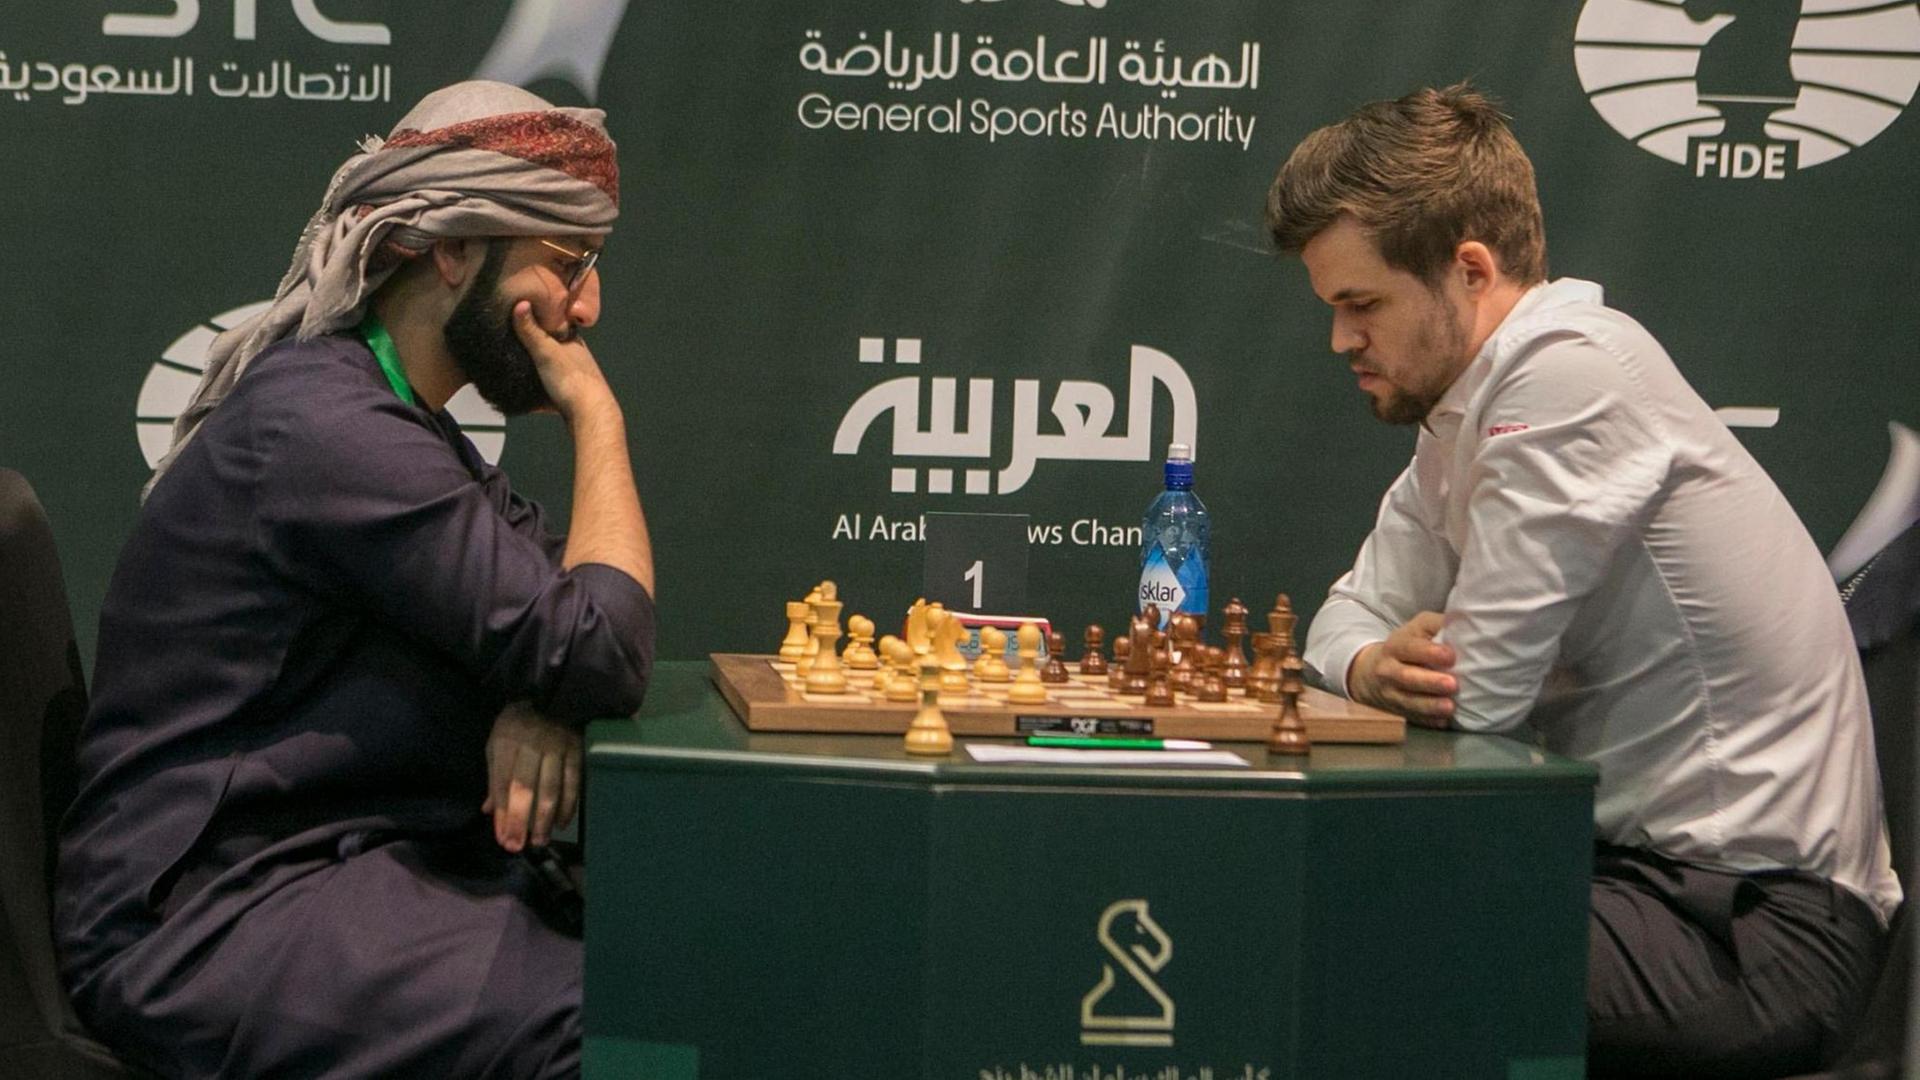 Der norwegische Schachspieler Magnus Carlsen (r) spielt in Riad während des Schach-Wettbewerbs "King Salman World Rapid and Blitz".